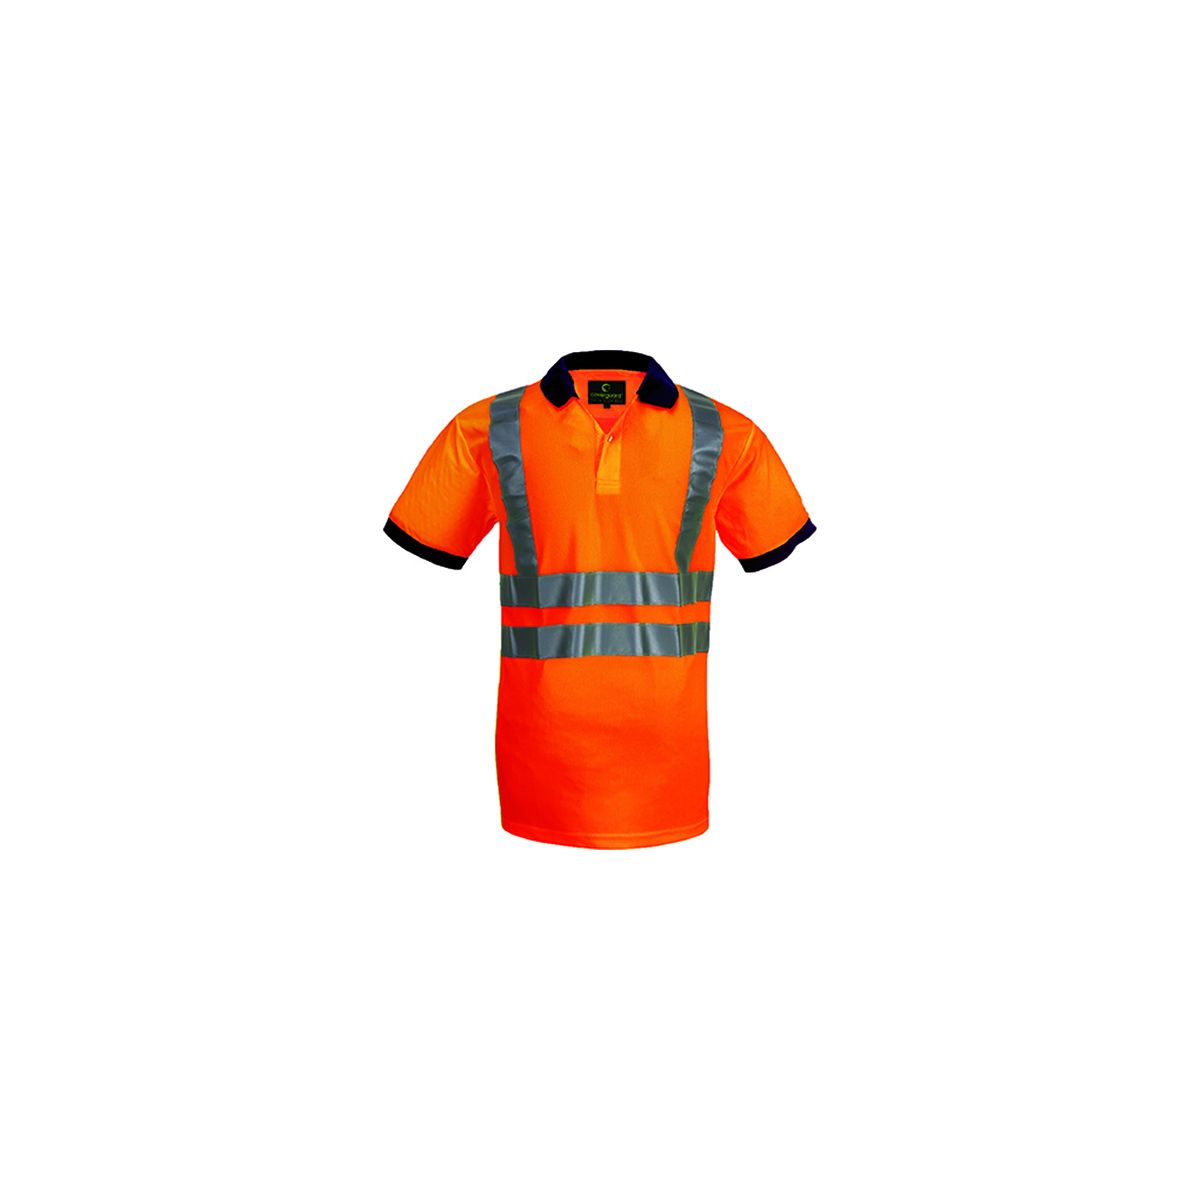 Polo haute visibilité manches courtes Yard orange - Coverguard - Taille XL 0